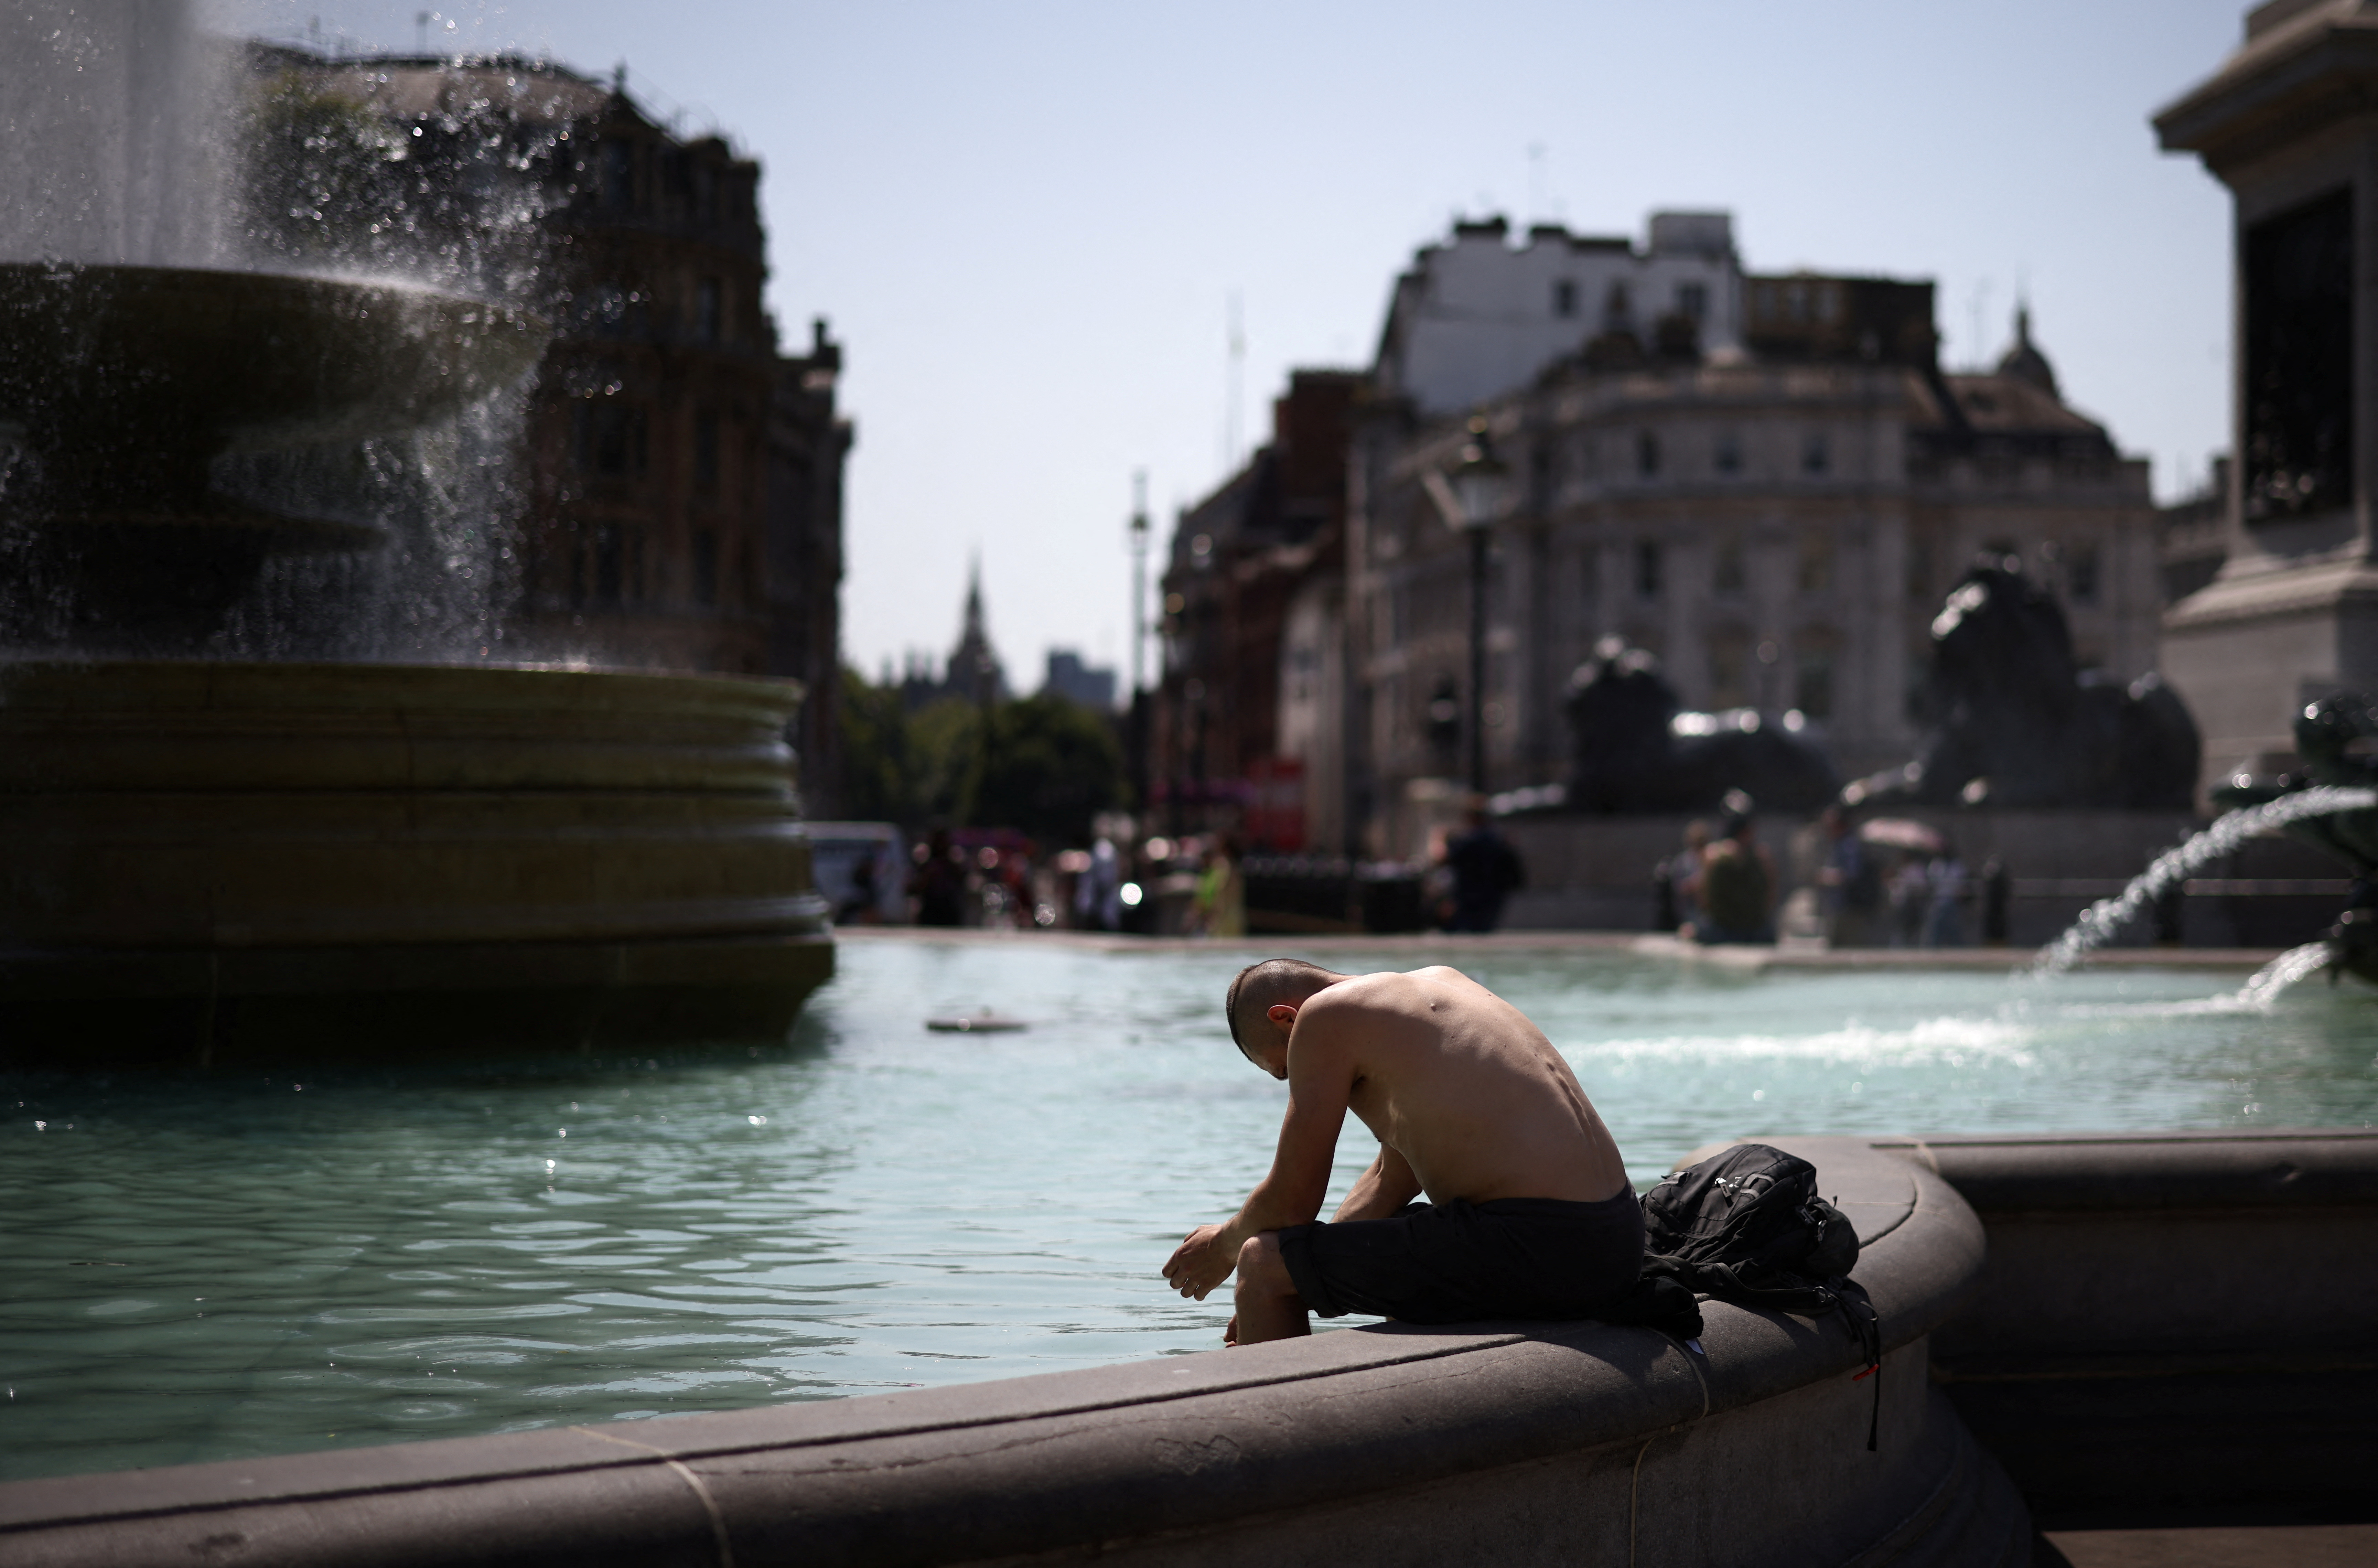 El Reino Unido registró este martes su día más caluroso, con una temperatura récord de 40.2°C, lo cual hizo que la gente se refrescara en las distintas fuentes de la ciudad.